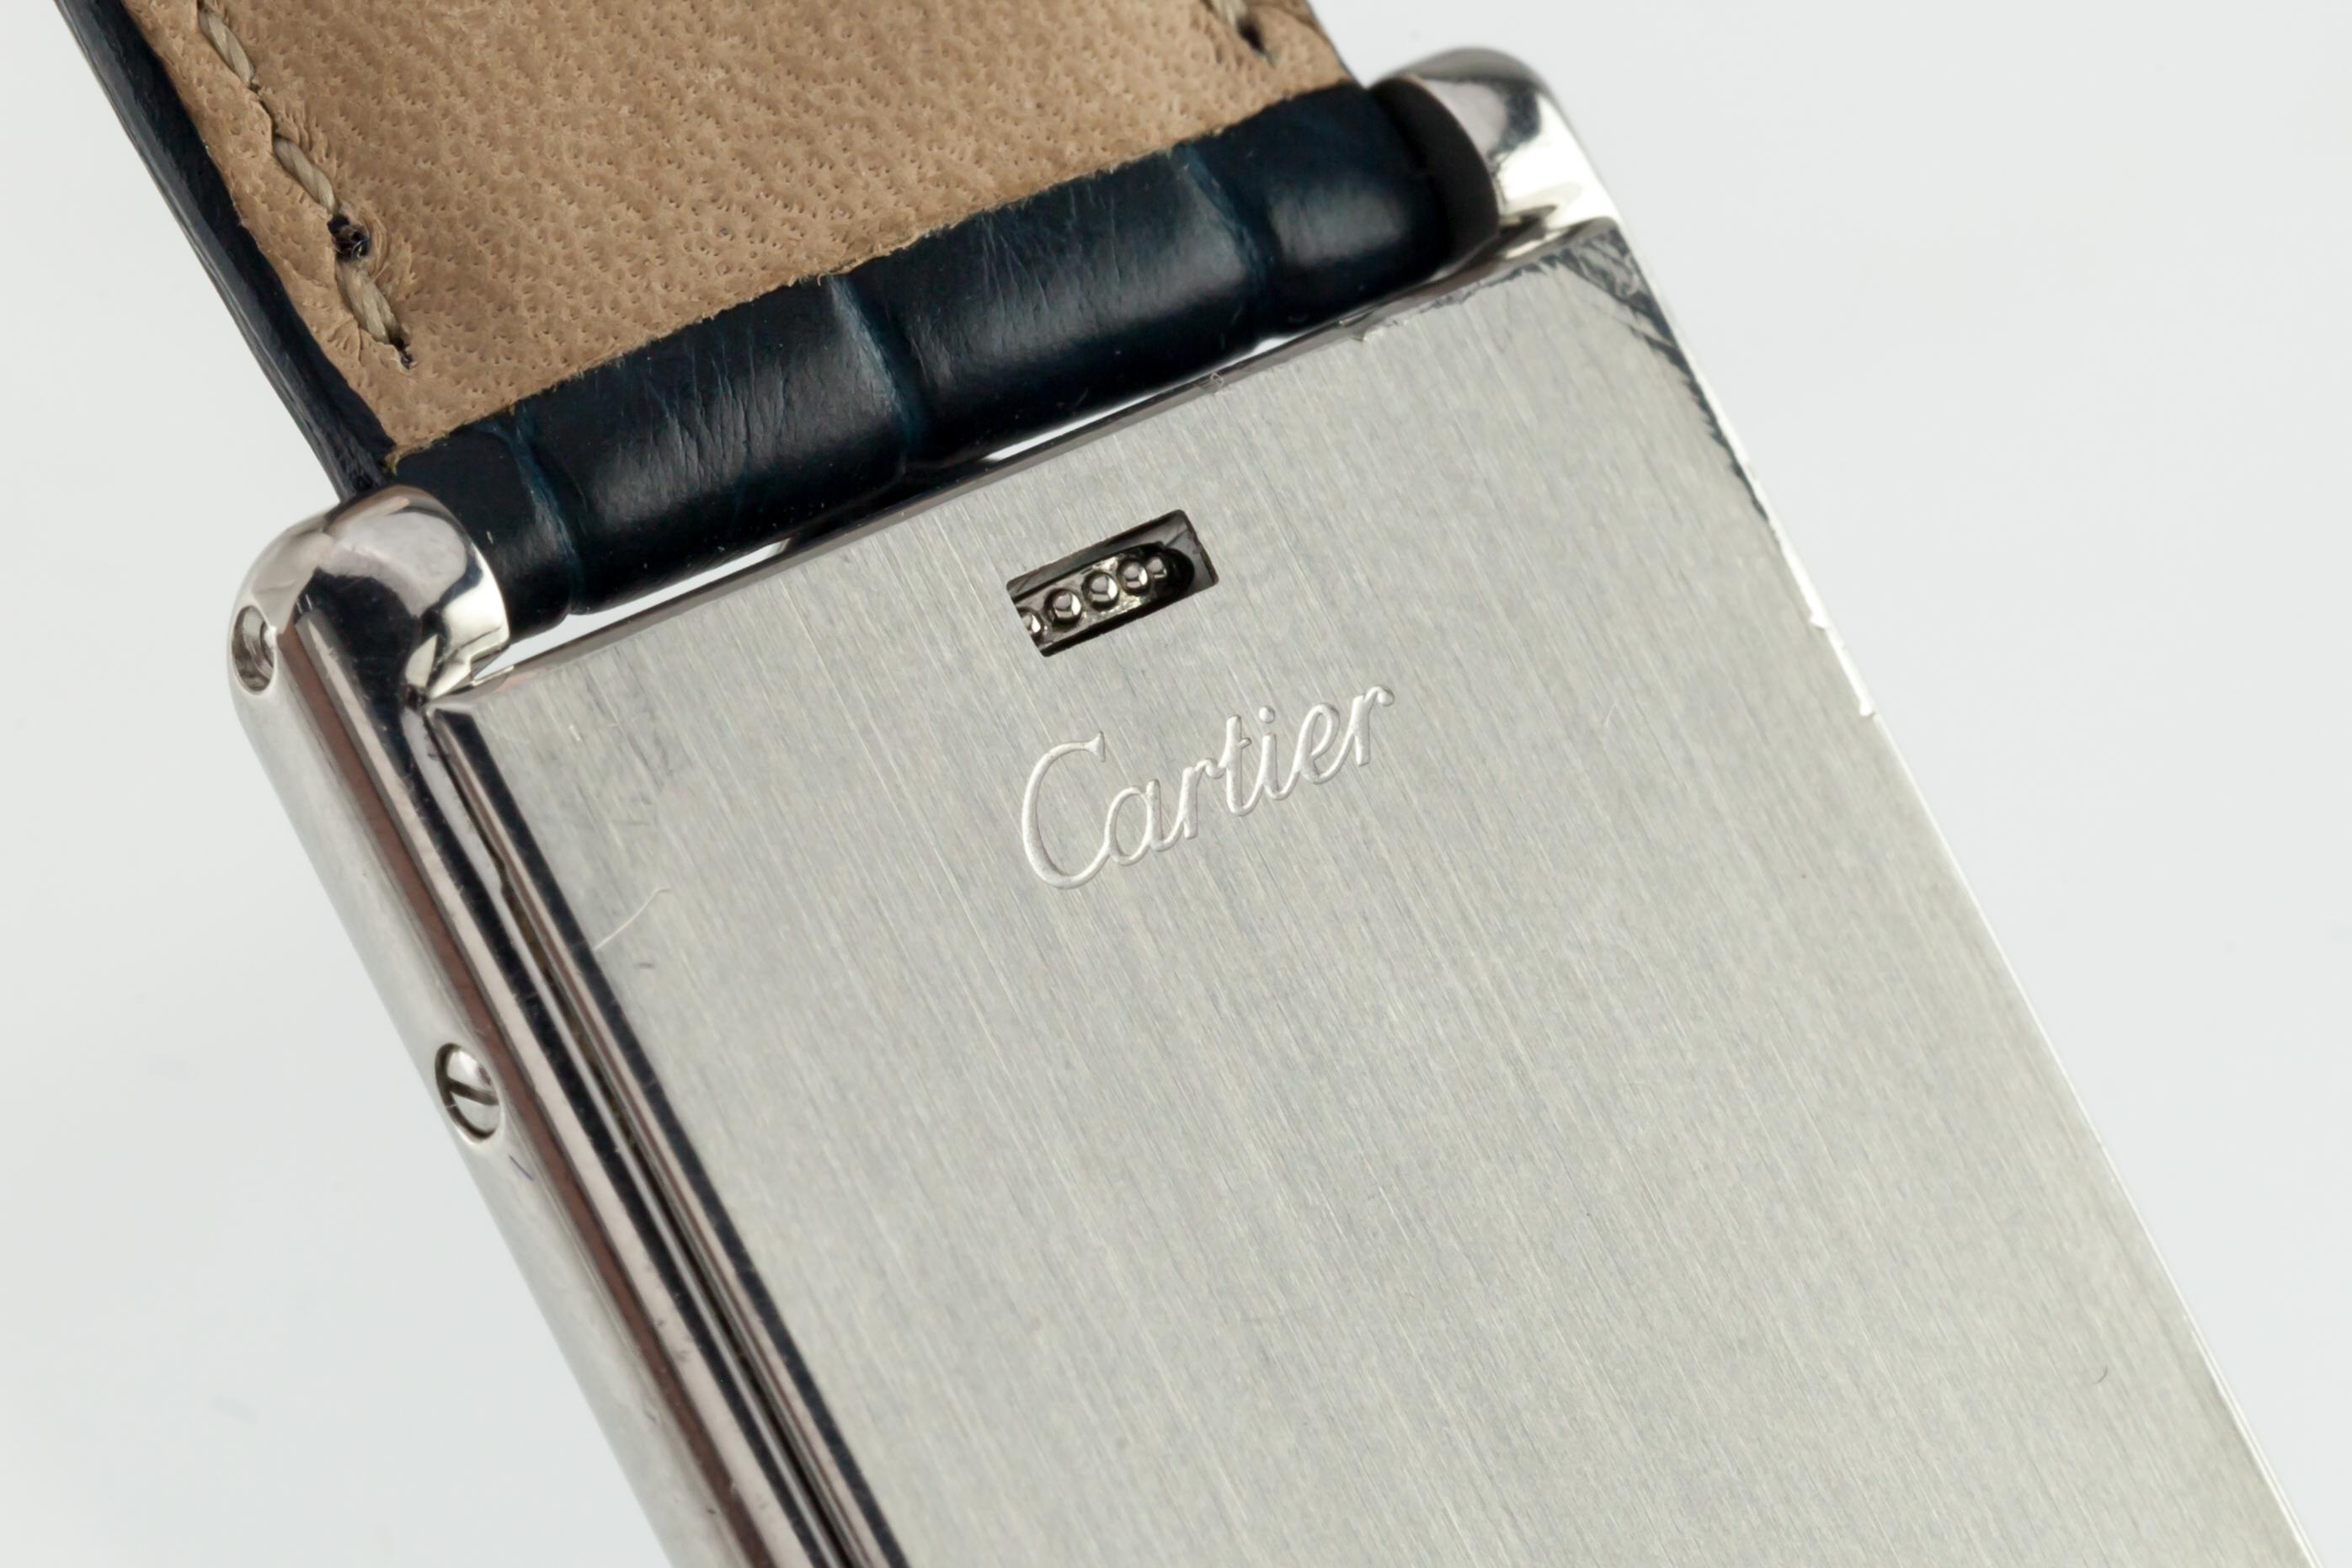 Cabochon Cartier Stainless Steel Men's Reversible Basculante Quartz Watch 2522 For Sale